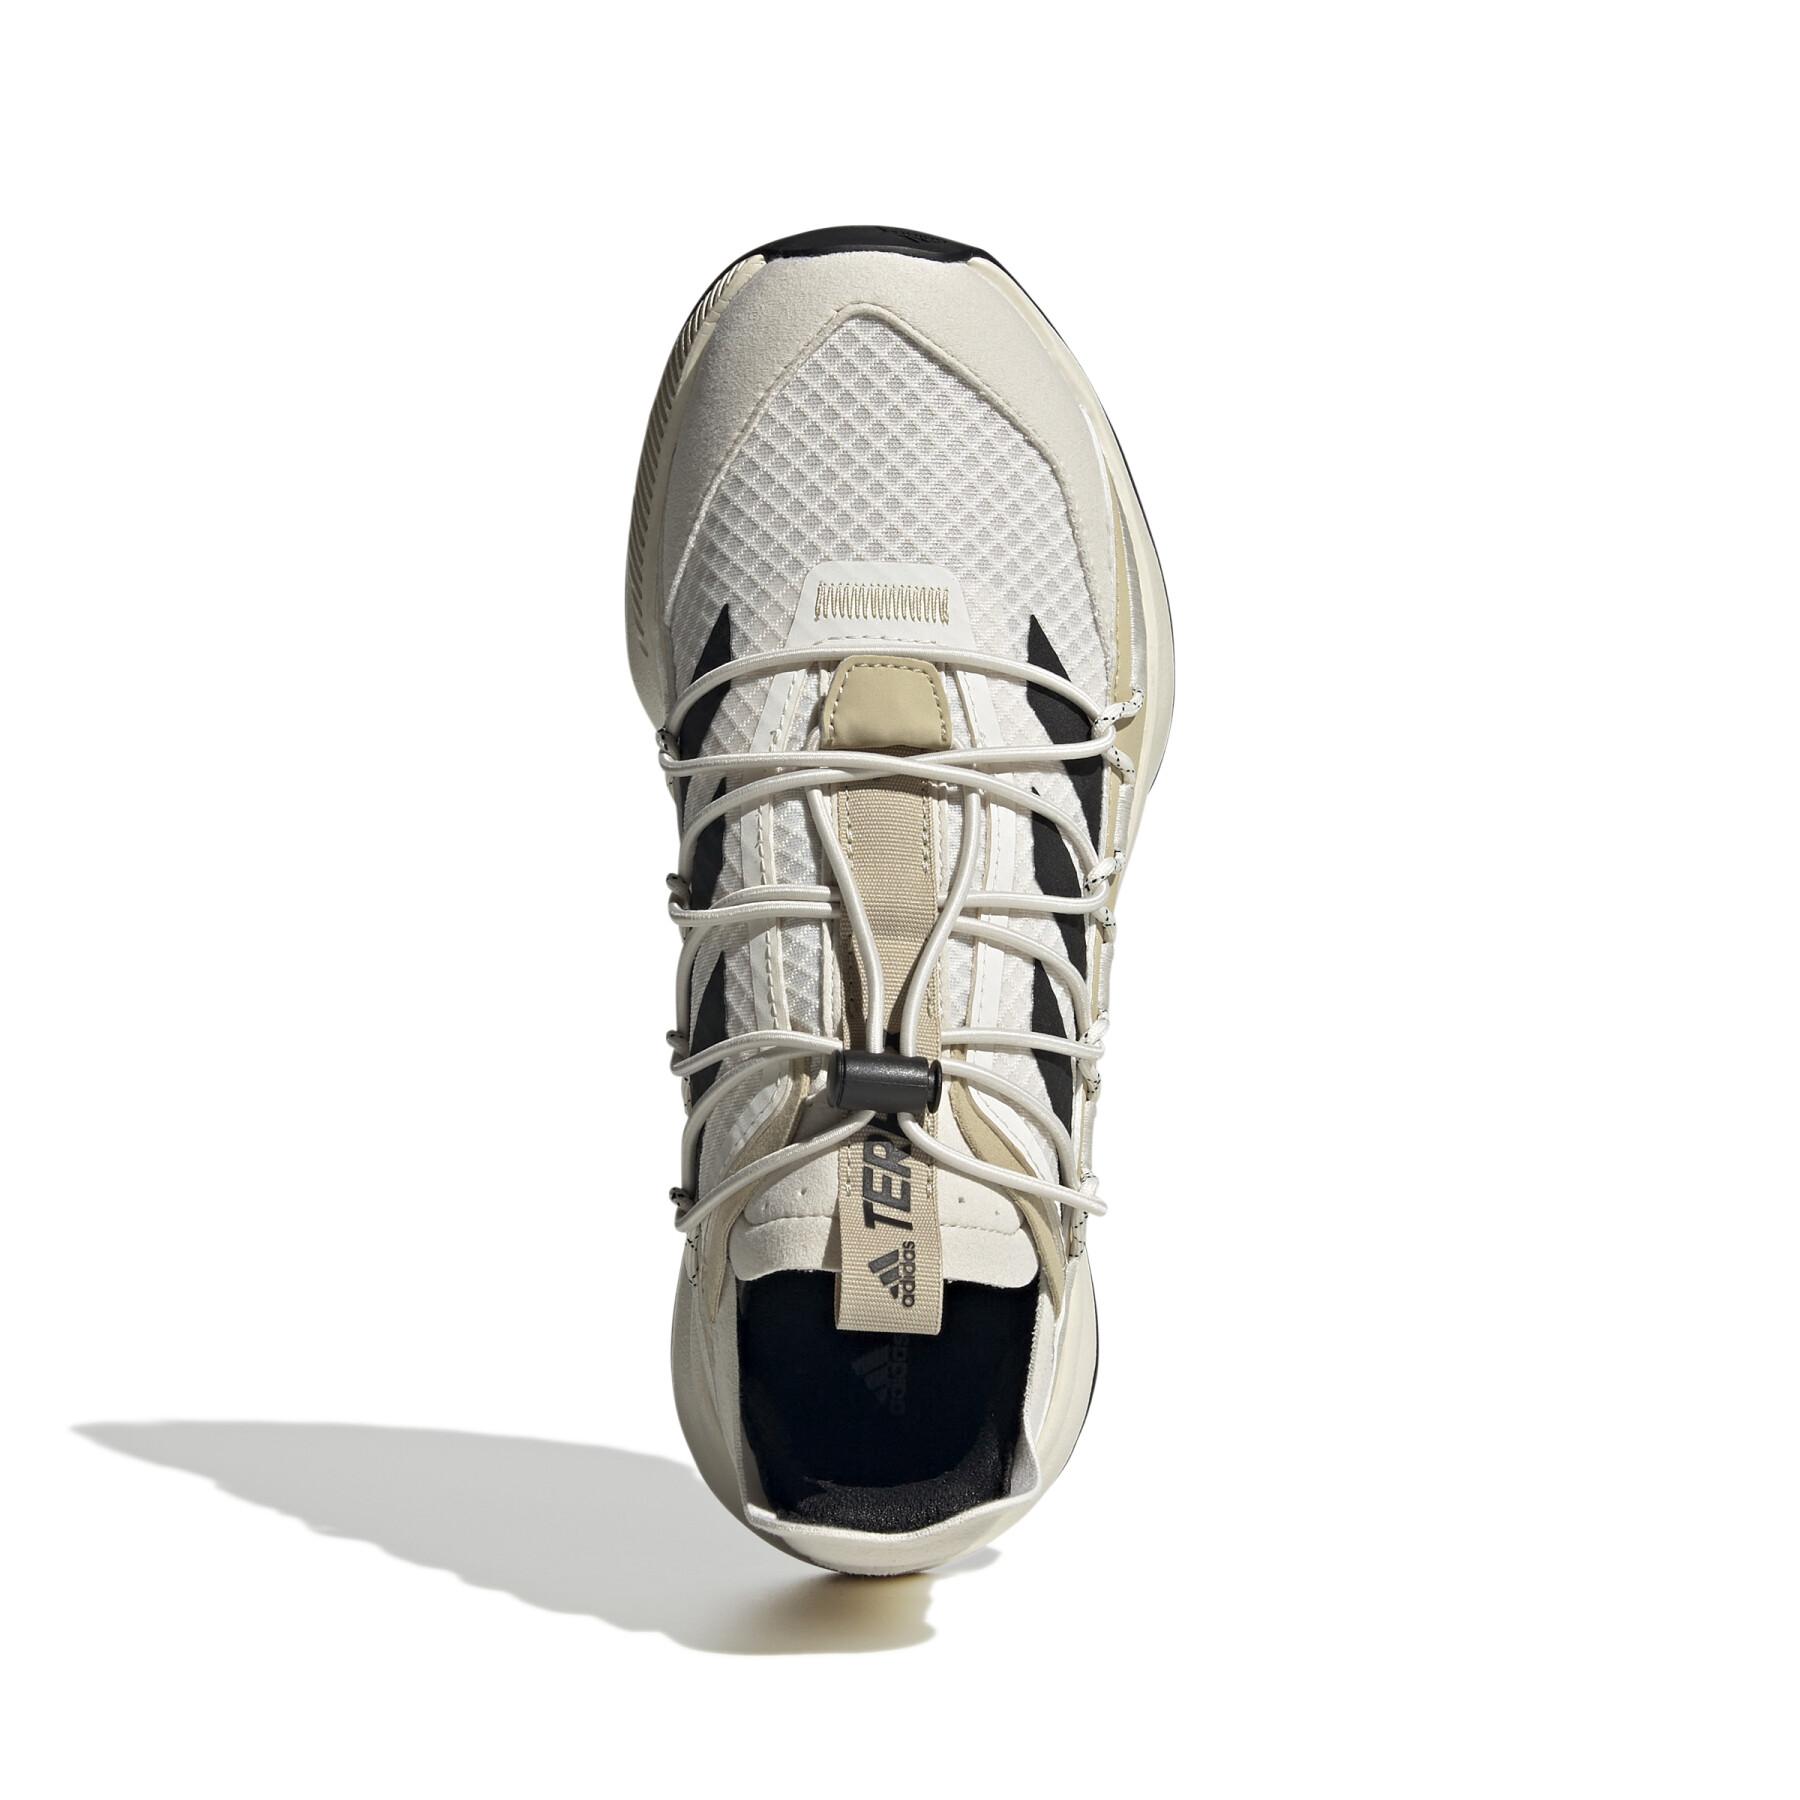 Chaussures de randonnée femme adidas Voyage Terrex Voyager 21